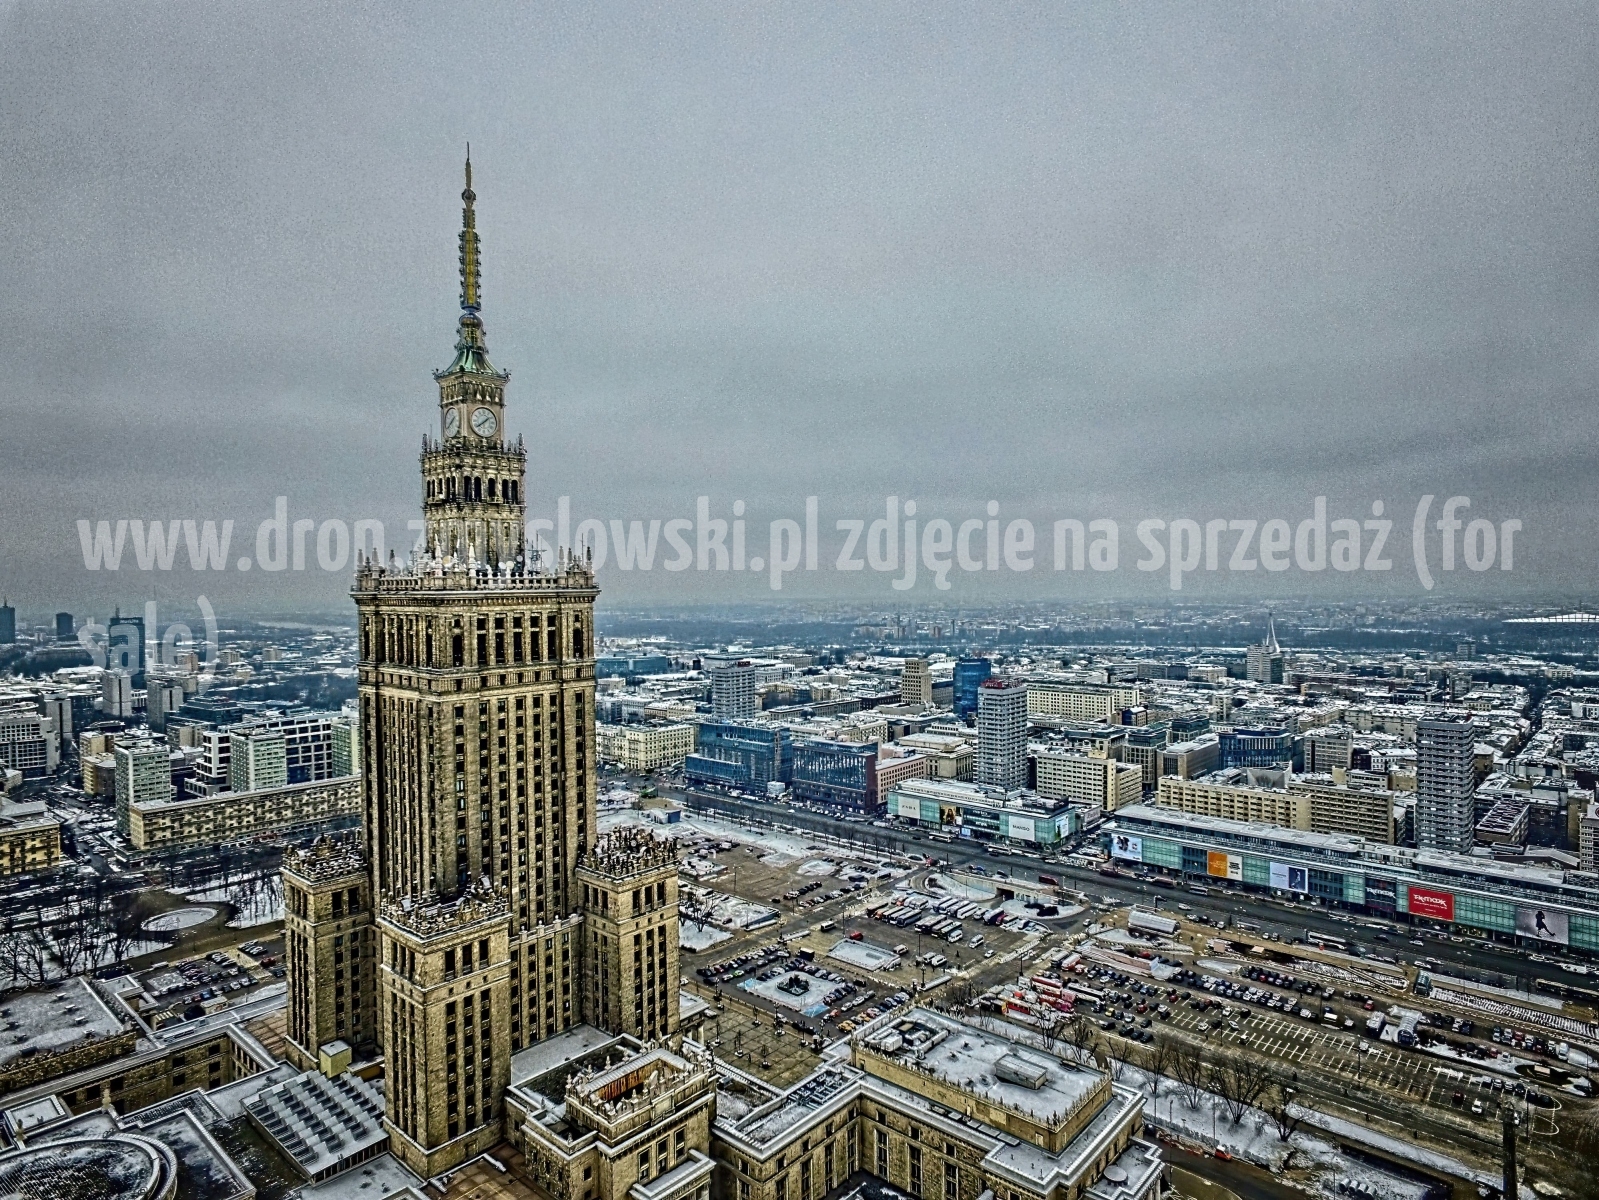 2018-02-15-lot-dronem-w-Warszawie-przy-Palacu-Kultury-i-Nauki-025_HDR-DeNoiseAI-standard-SharpenAI-Motion